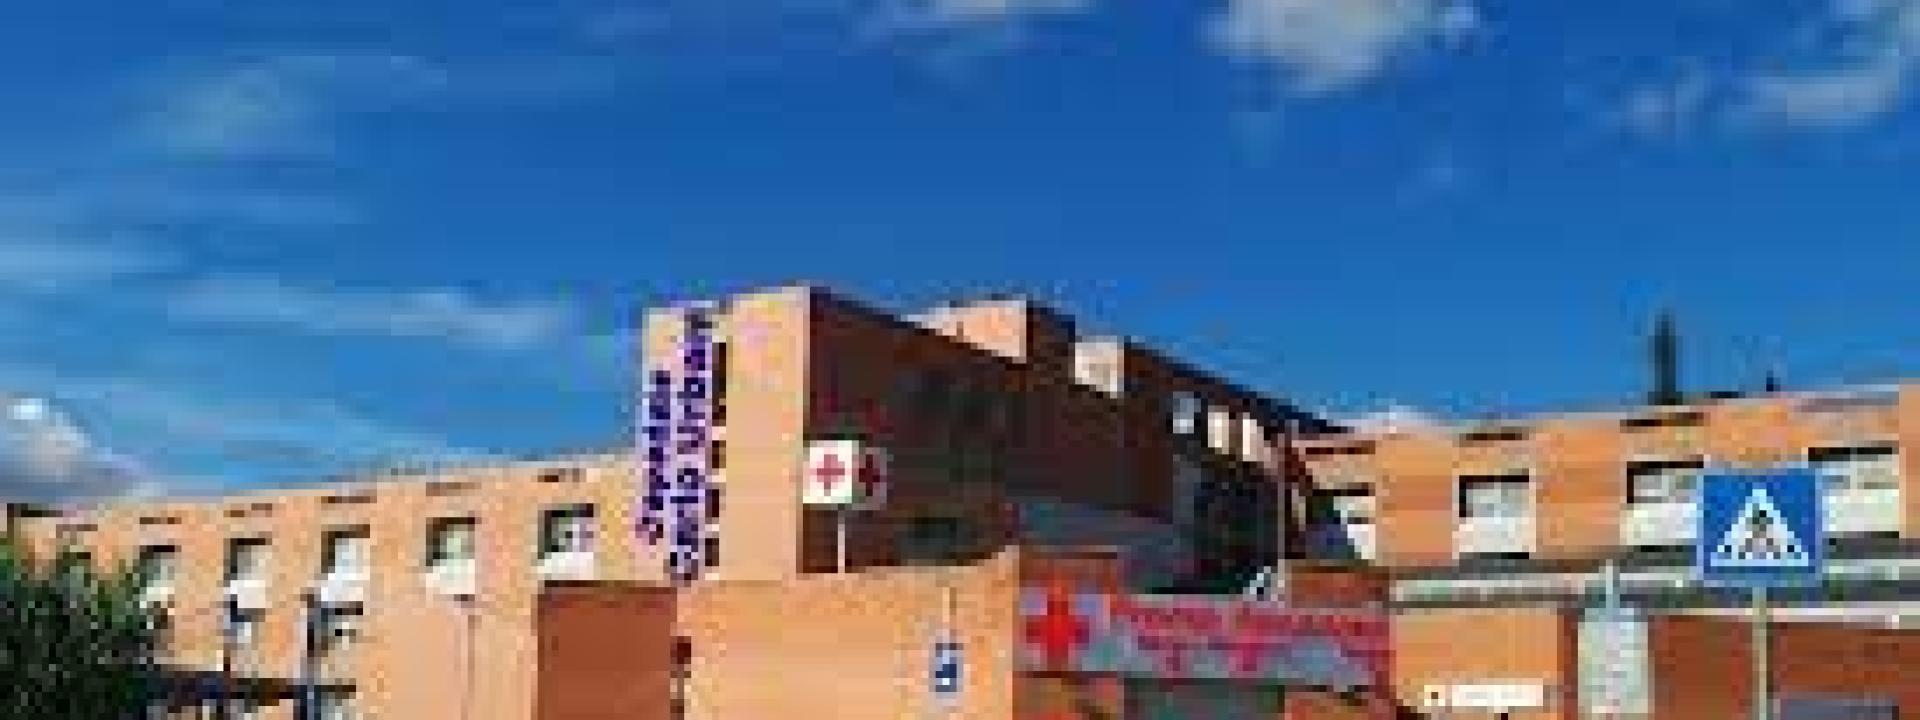 Marche - In ospedale per abuso etilico, si sdraia al pronto soccorso e inveisce contro medici e infermieri: albanese denunciato e espulso